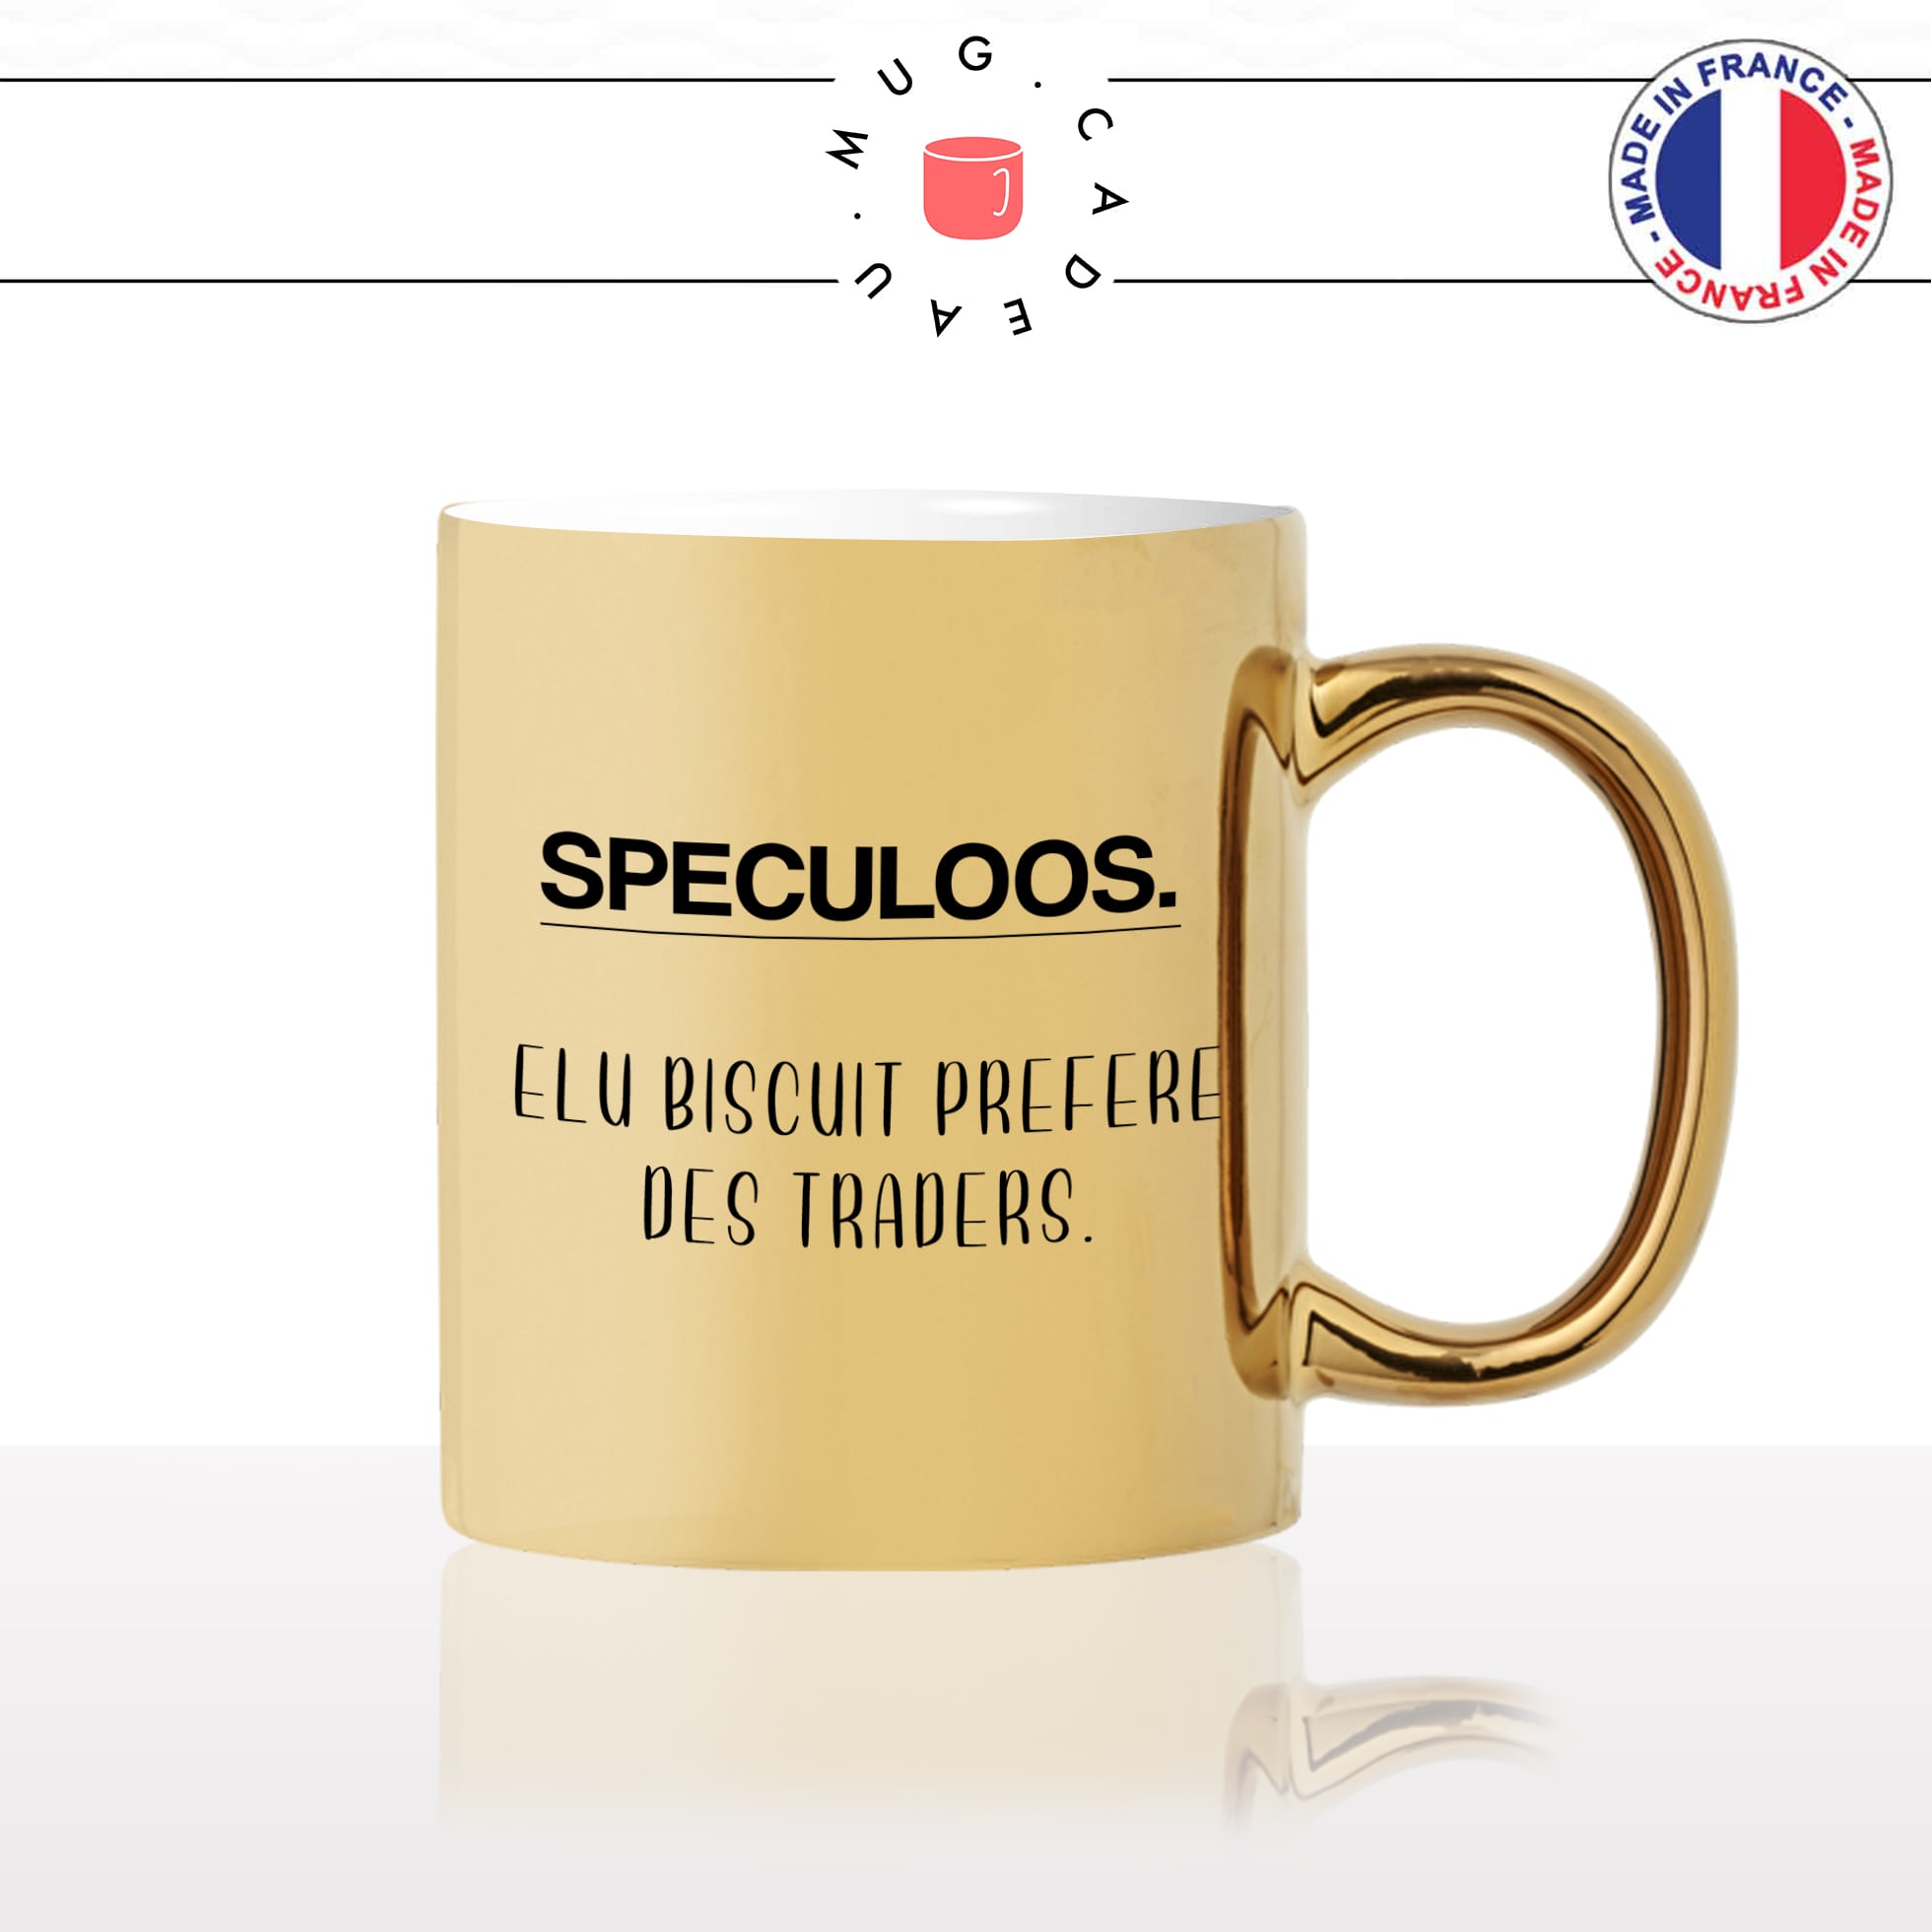 mug-tasse-doré-or-gold-définition-spéculoos-biscuit-trader-métier-blague-humour-fun-idée-cadeau-personnalisé-café-thé2-min